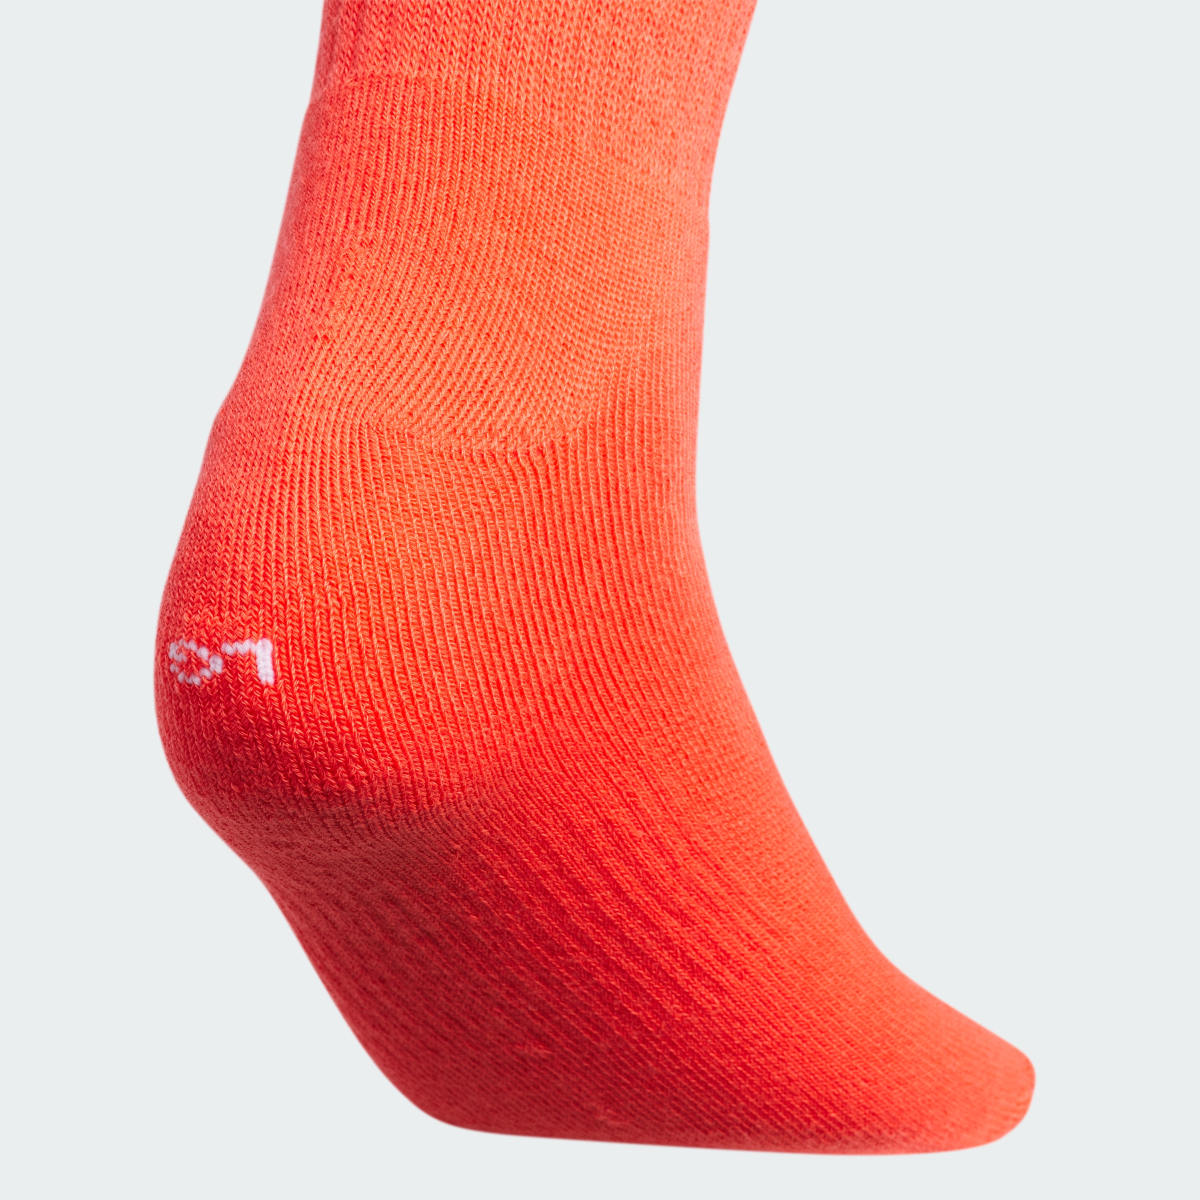 Adidas Trefoil Crew Socks 6 Pairs. 5